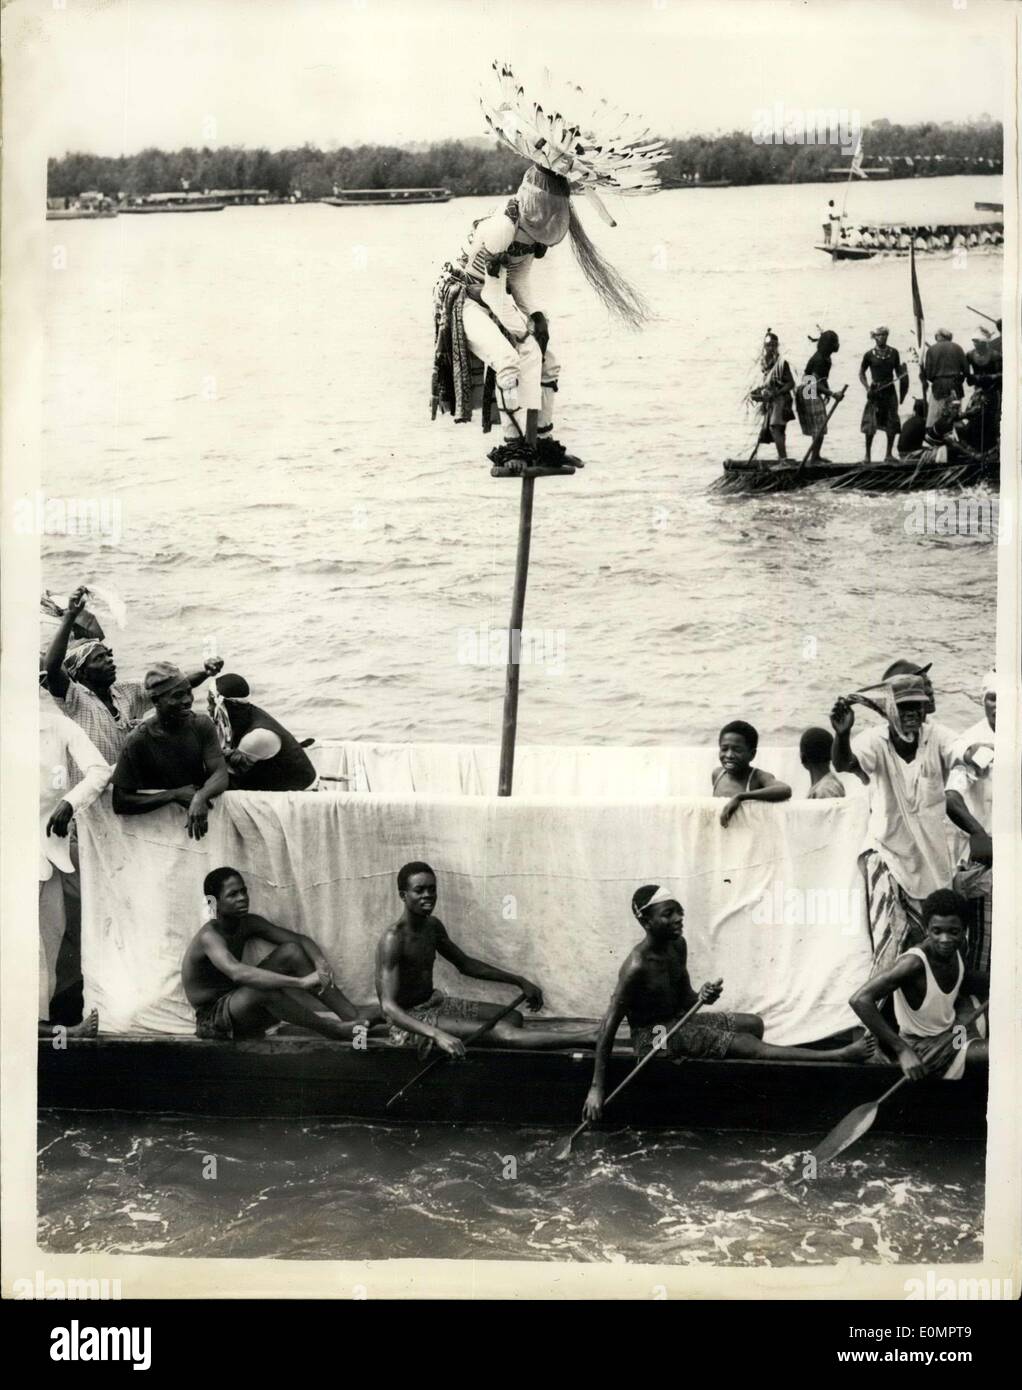 Febbraio 13, 1956 - Il Royal Tour nigeriana.. Ju-Ju uomo si arrampica alla sommità del montante di sollevamento. Keystone Mostra fotografica di:- un uomo Ju-Ju sale in vetta Foto Stock